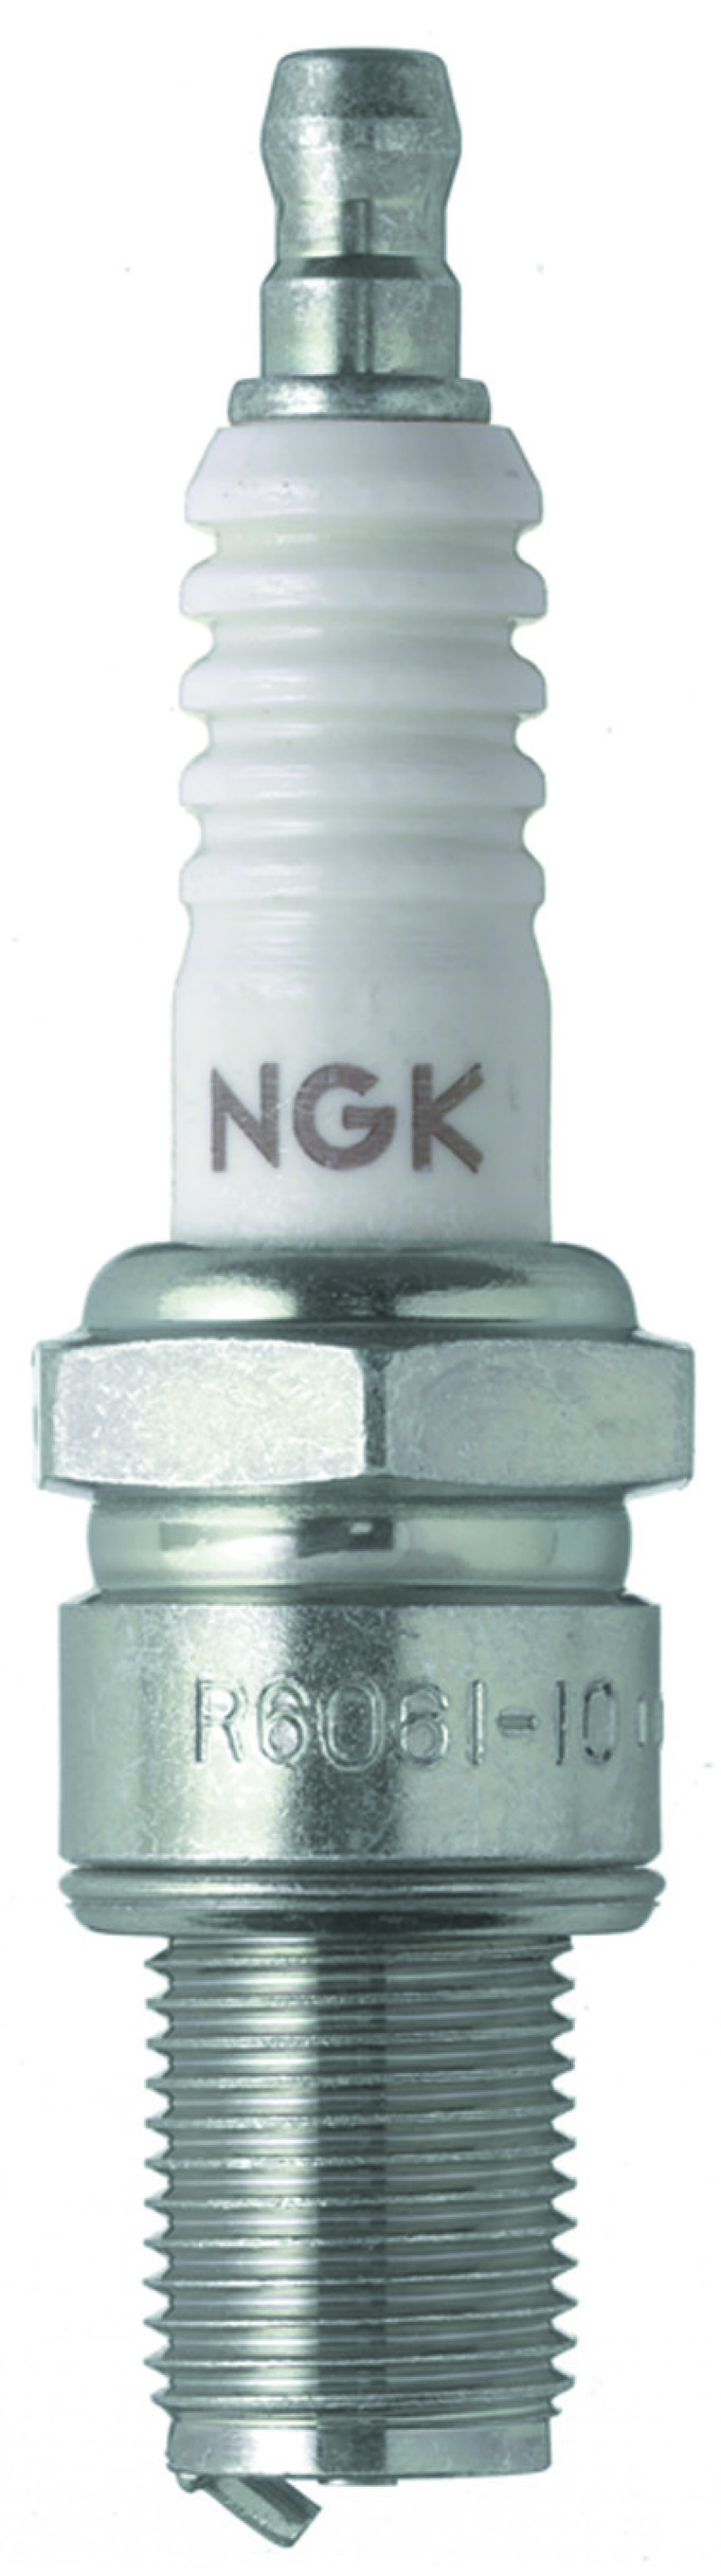 NGK Nickel Spark Plug Box of 10 (R6061-10) - 5962